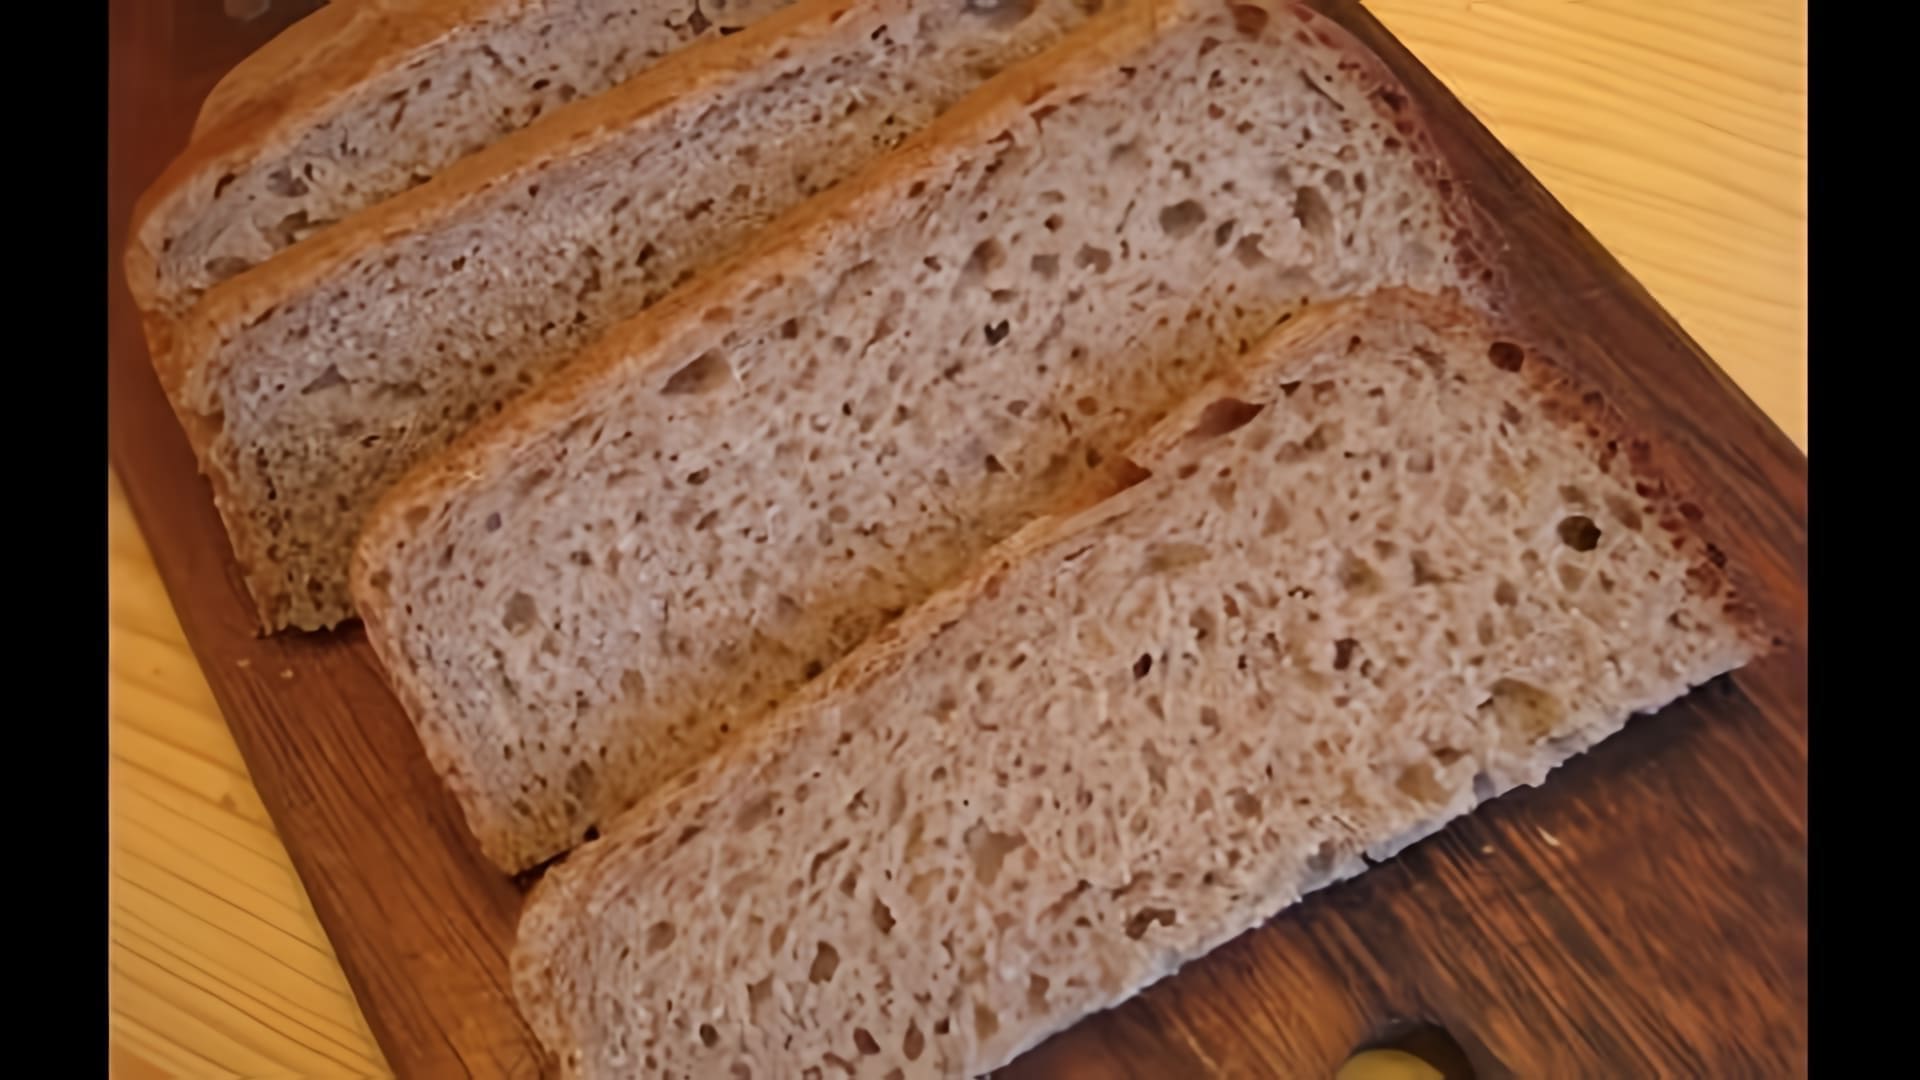 Дарницкий черный хлеб - это традиционный русский хлеб, который готовится из ржаной муки с добавлением пшеничной муки и различных специй